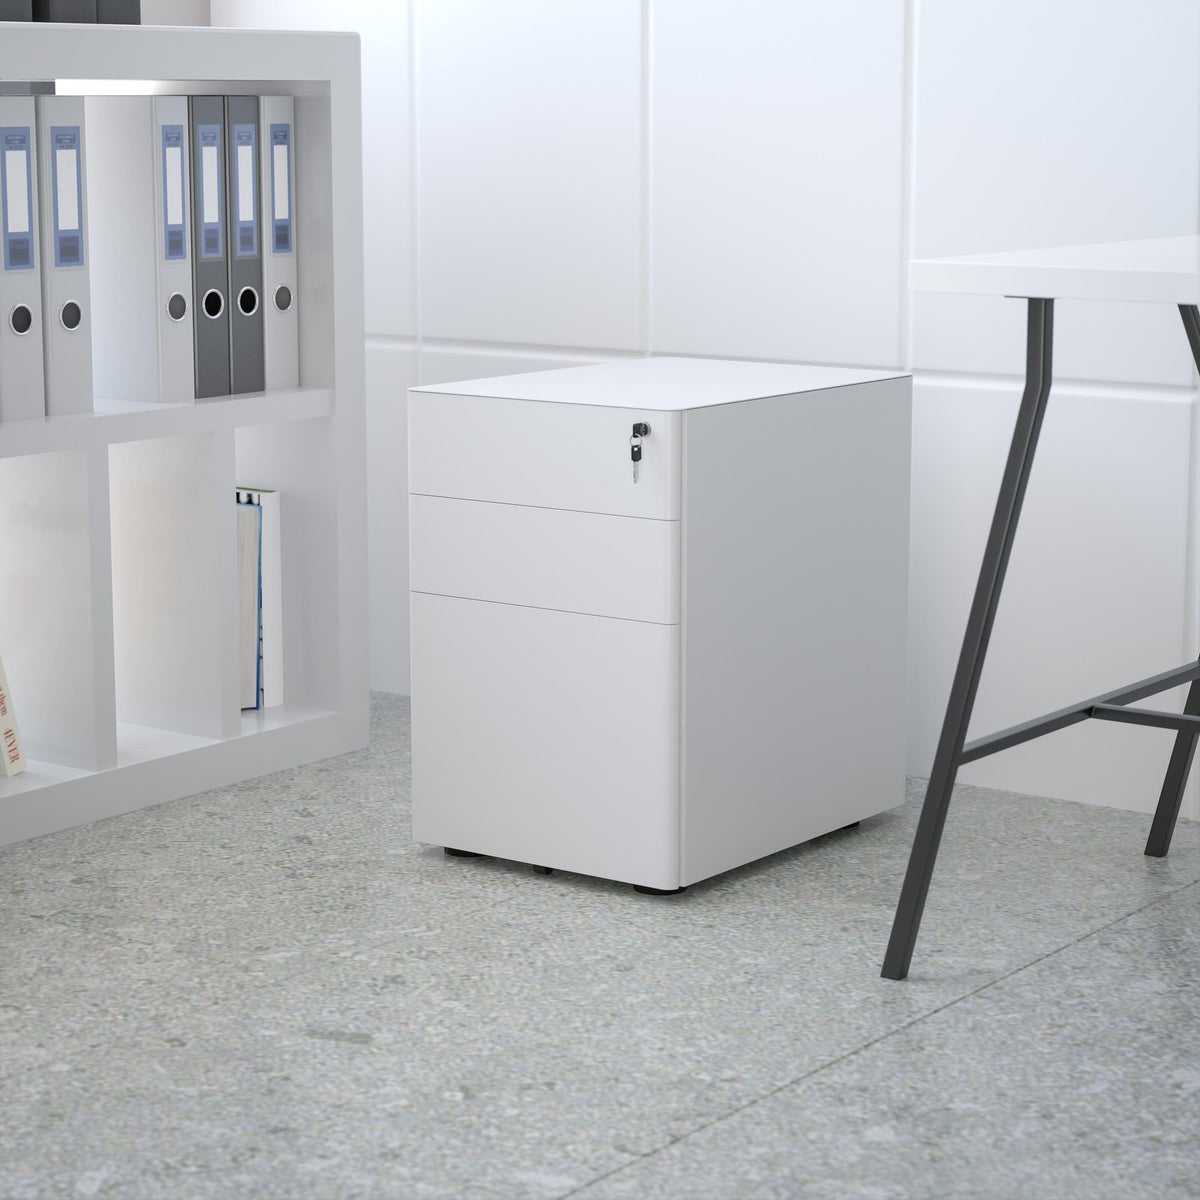 White |#| Modern 3-Drawer Mobile Locking Filing Cabinet Storage Organizer-White